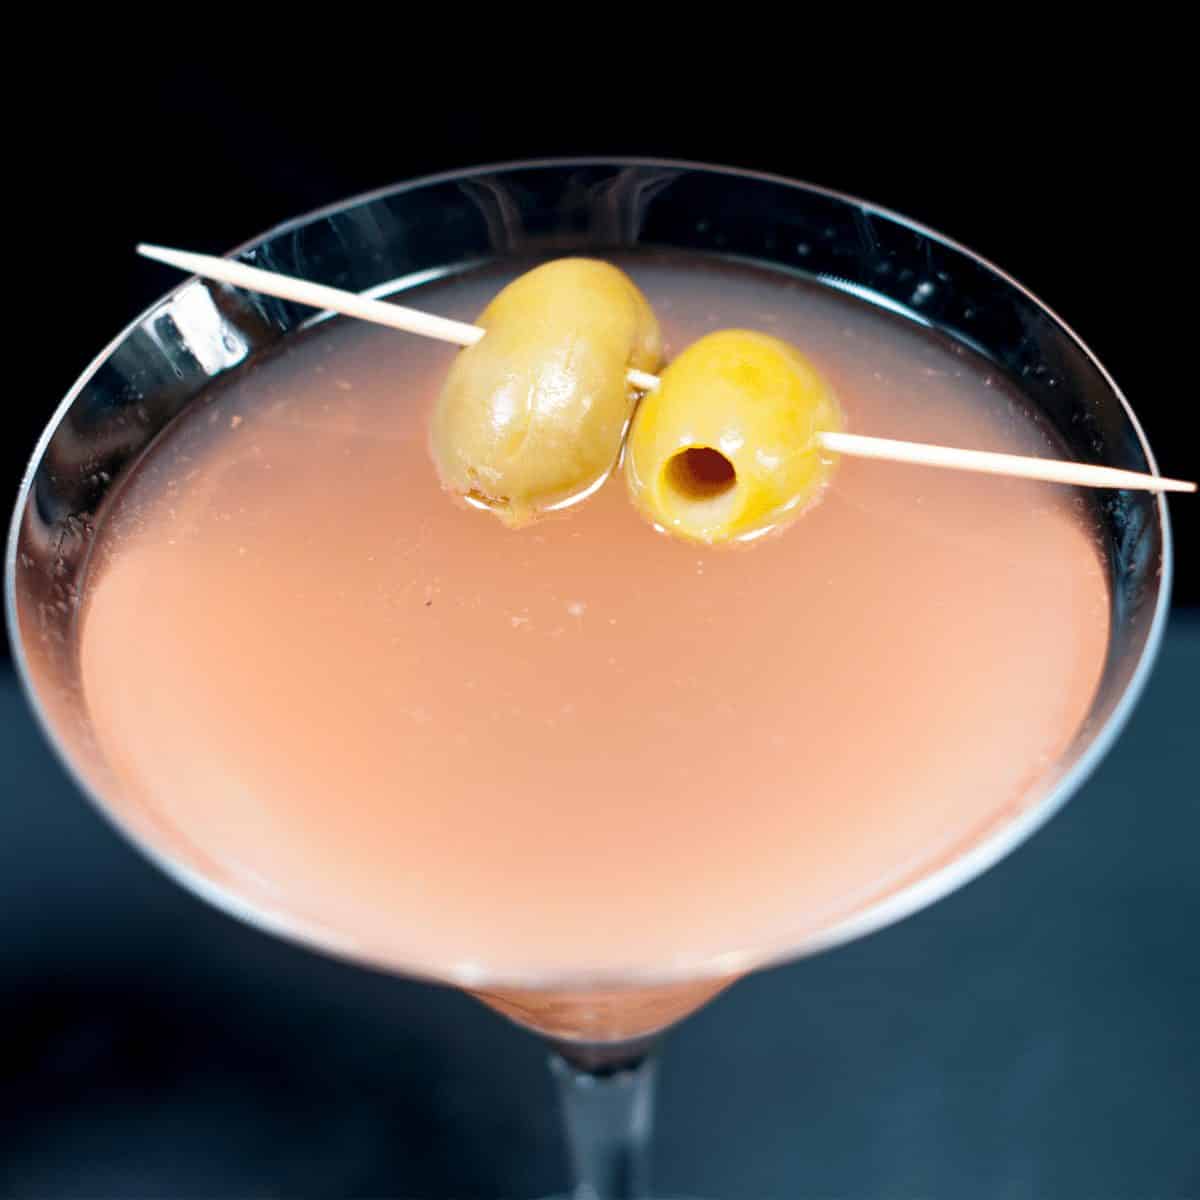 Passion fruit pornstar martini | https://theyumyumclub.com/2019/05/13/passion-fruit-pornstar-martini/